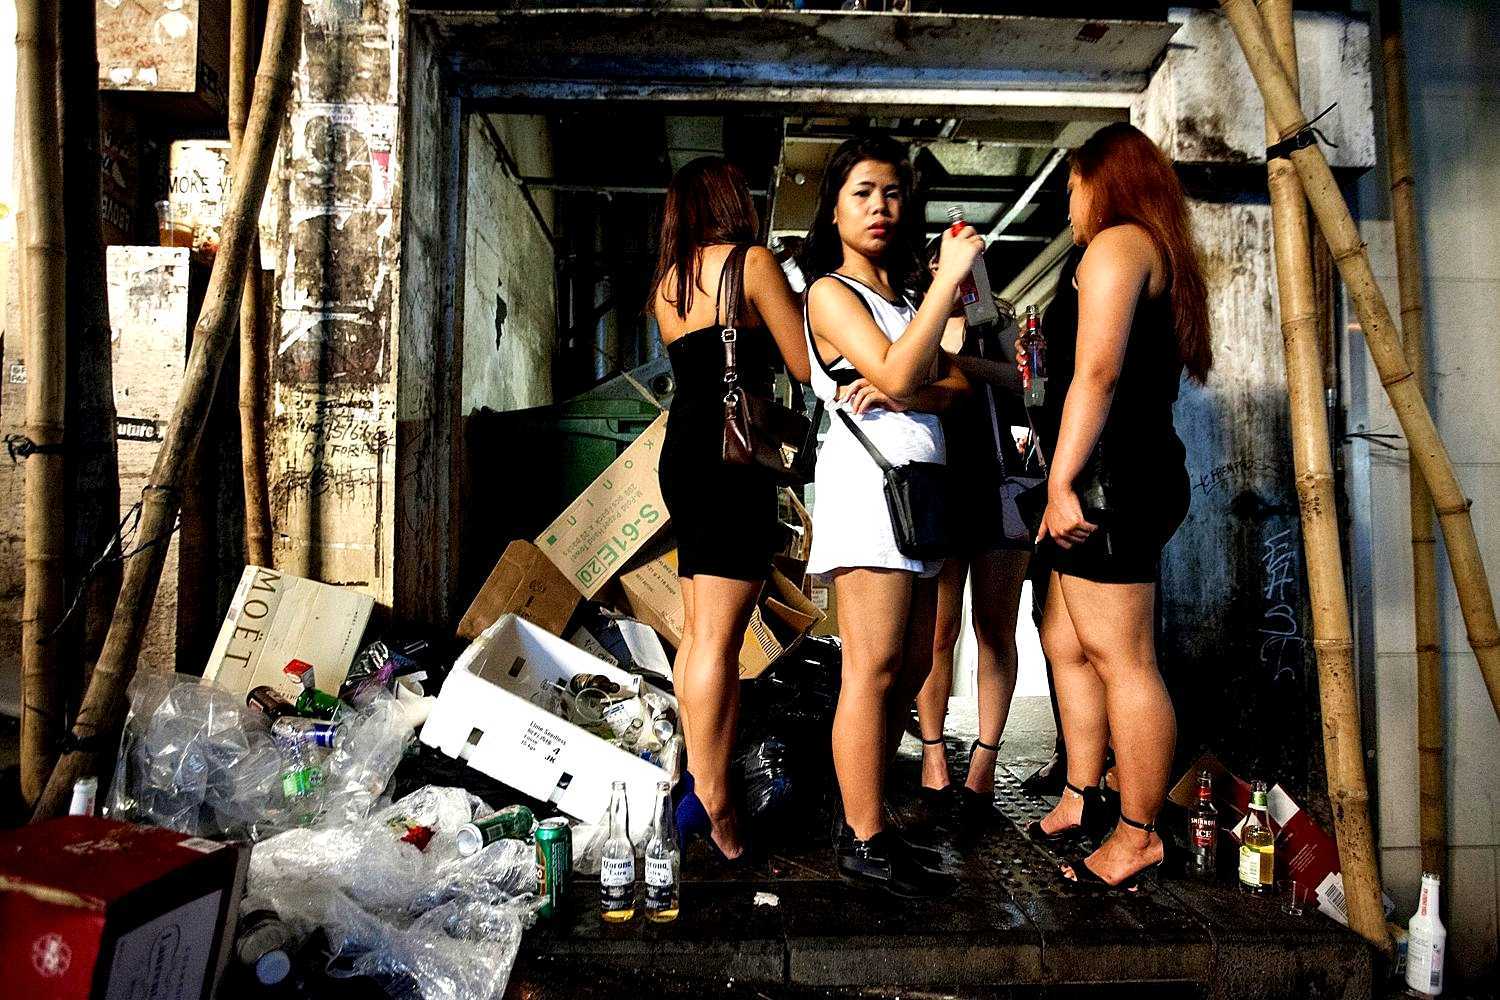 Escort girls in Hong Kong